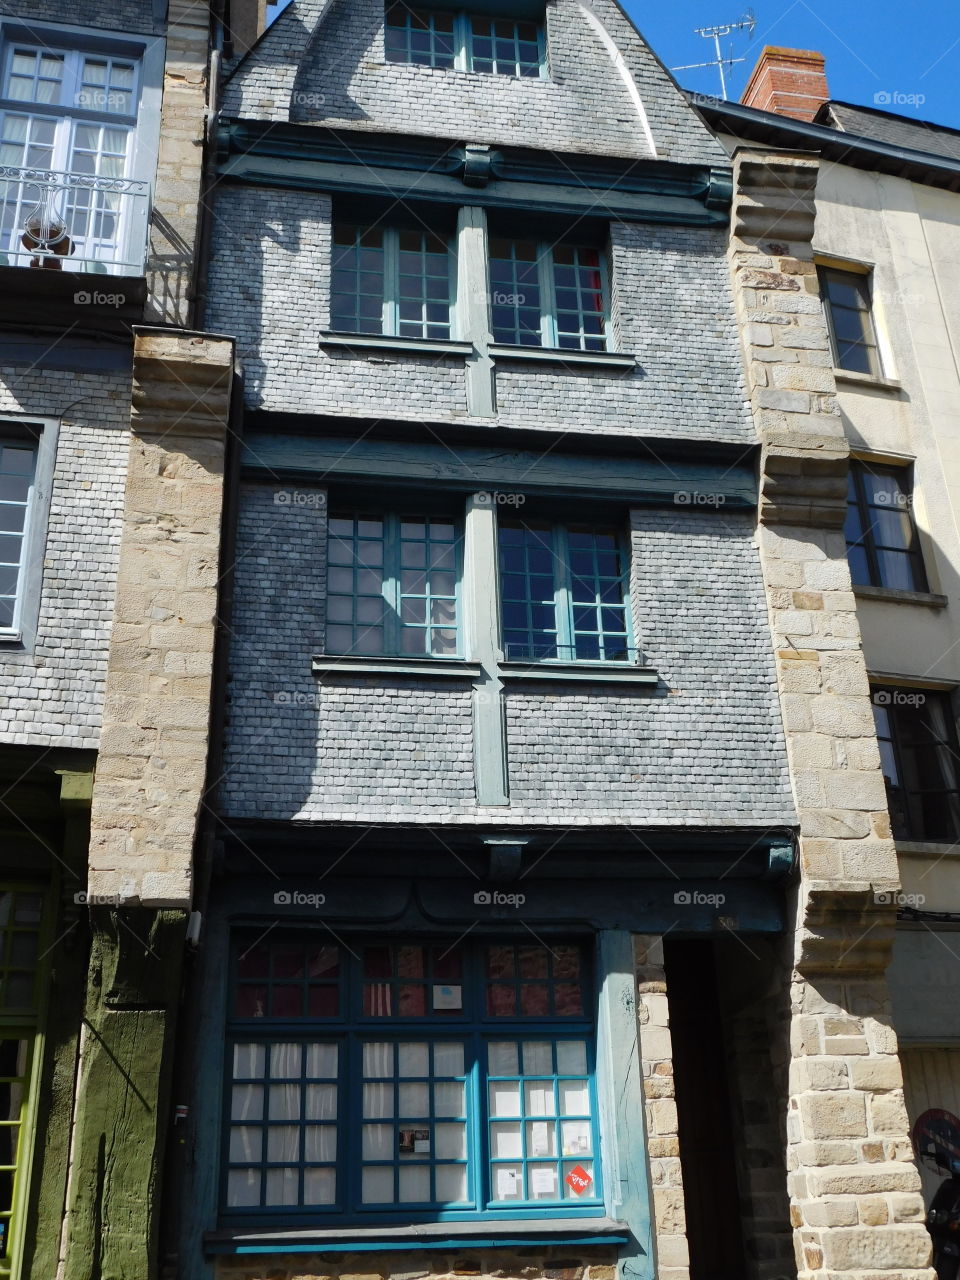 Petits appartements d’un village de France 